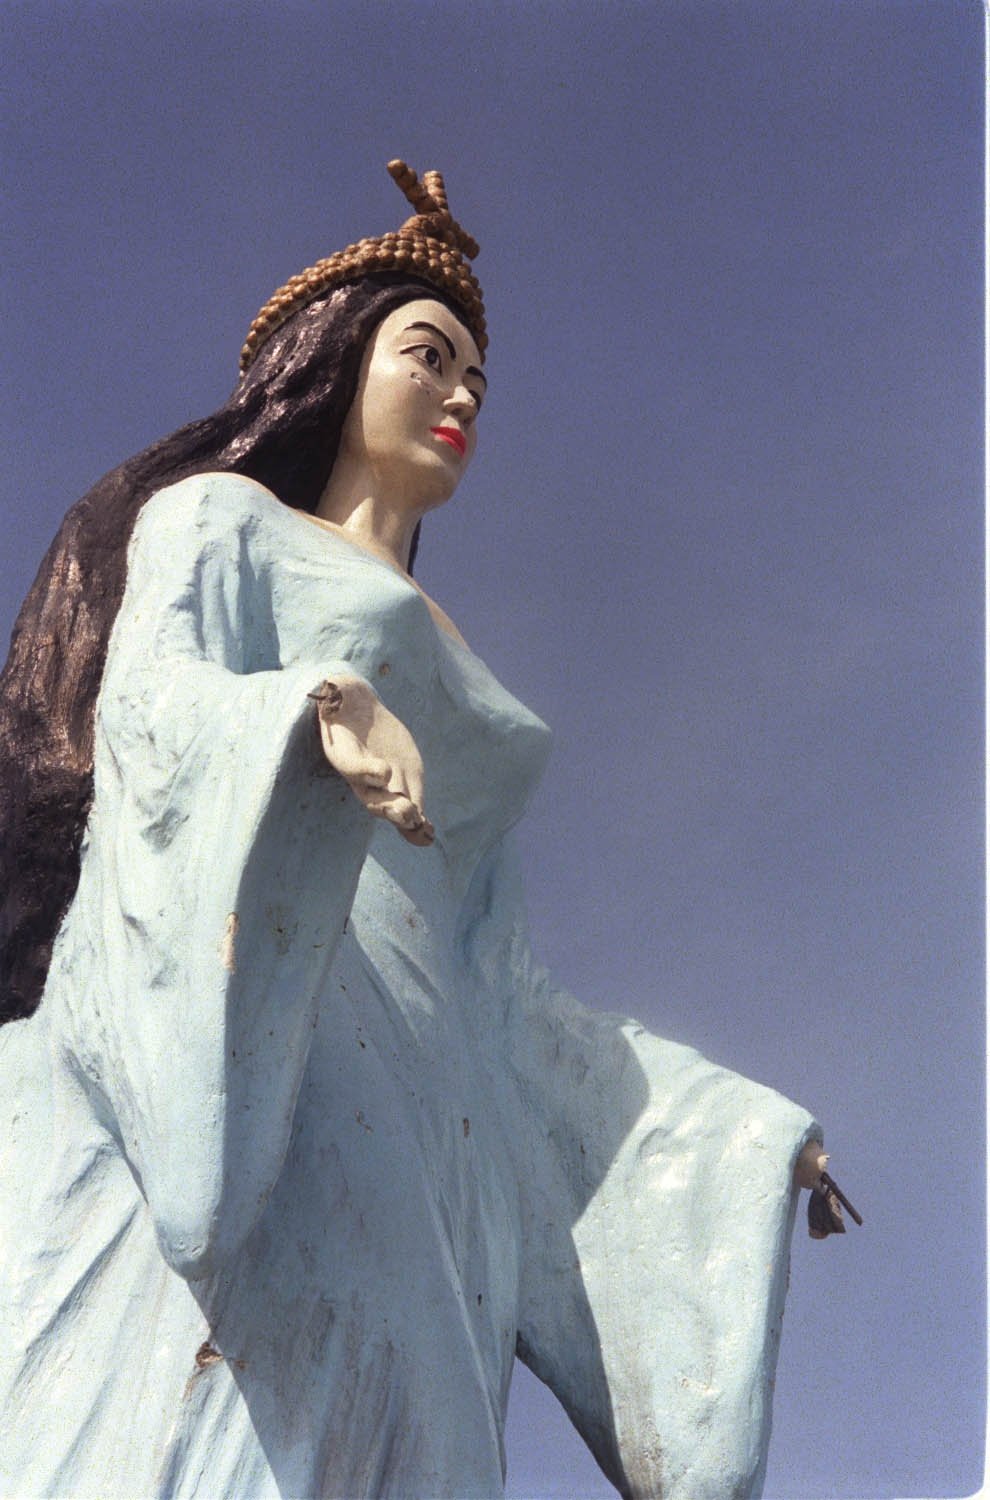 Estátua de Iemanjá, na Praia de Camburi,  precisando de restauração. Data: 11/06/2004. Foto: Fábio Vicentini. Neg.: 63.895.grv